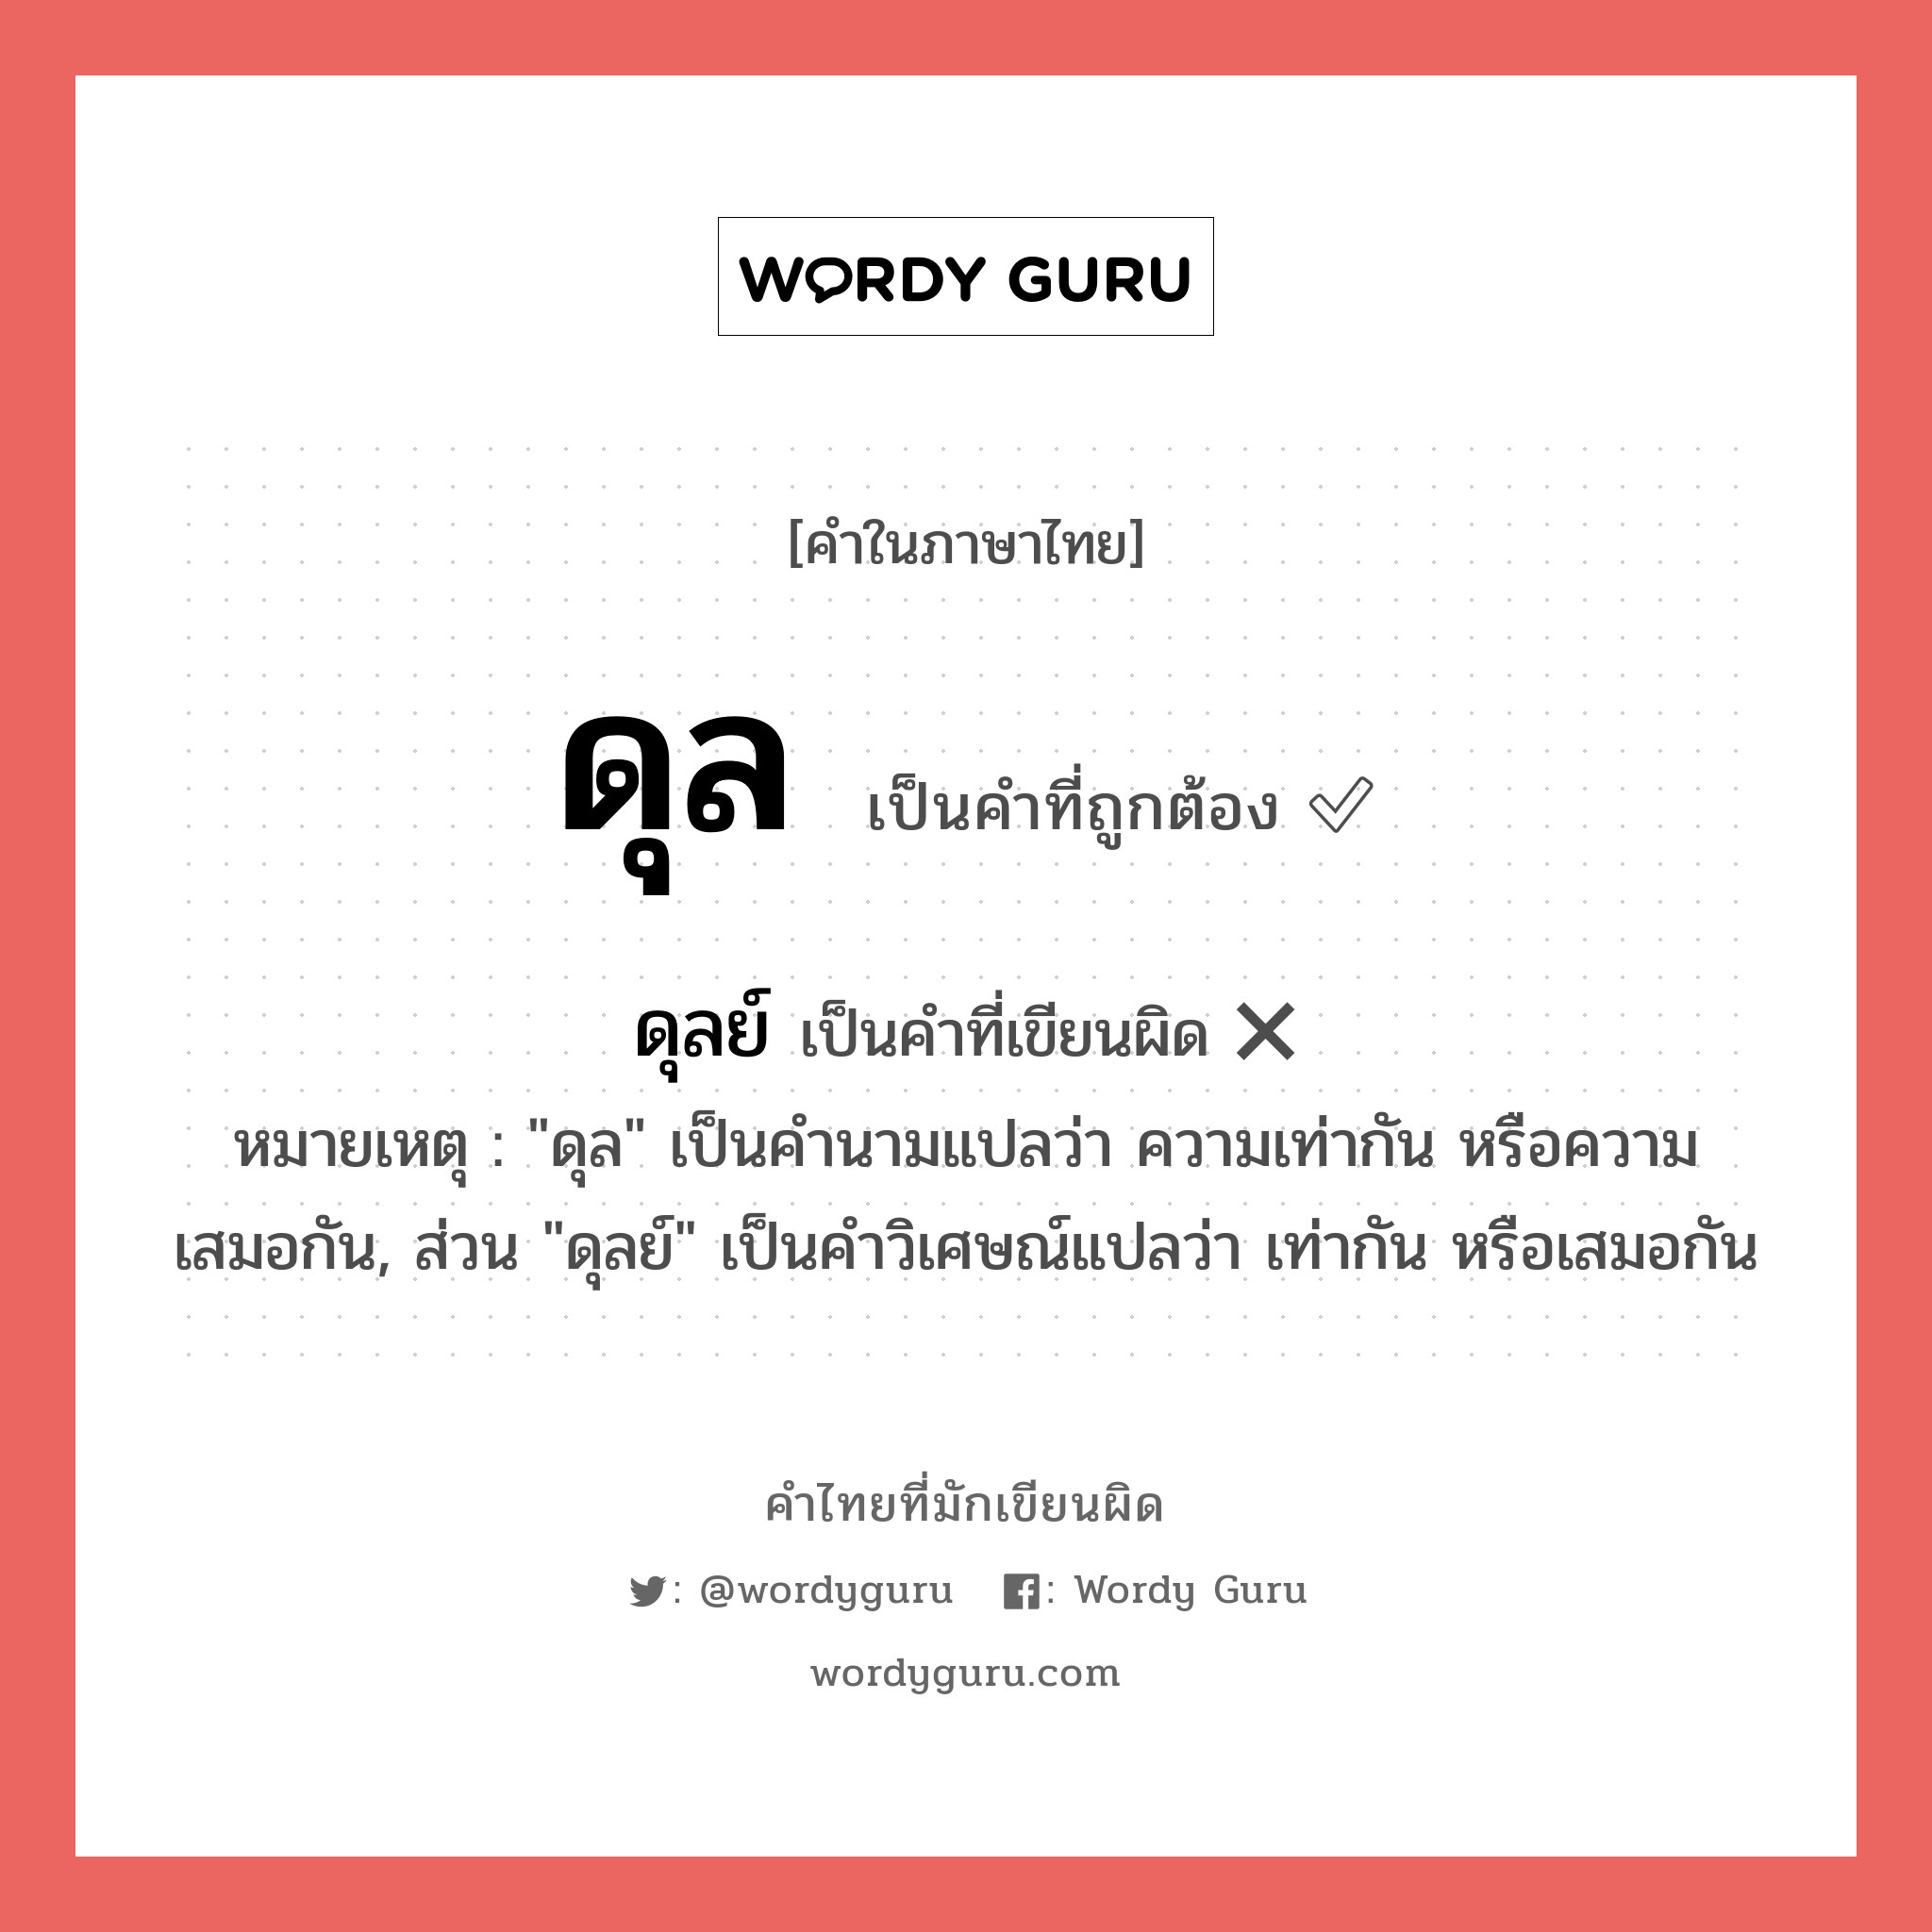 ดุล หรือ ดุลย์ คำไหนเขียนถูก?, คำในภาษาไทยที่มักเขียนผิด ดุล คำที่ผิด ❌ ดุลย์ หมายเหตุ "ดุล" เป็นคำนามแปลว่า ความเท่ากัน หรือความเสมอกัน, ส่วน "ดุลย์" เป็นคำวิเศษณ์แปลว่า เท่ากัน หรือเสมอกัน